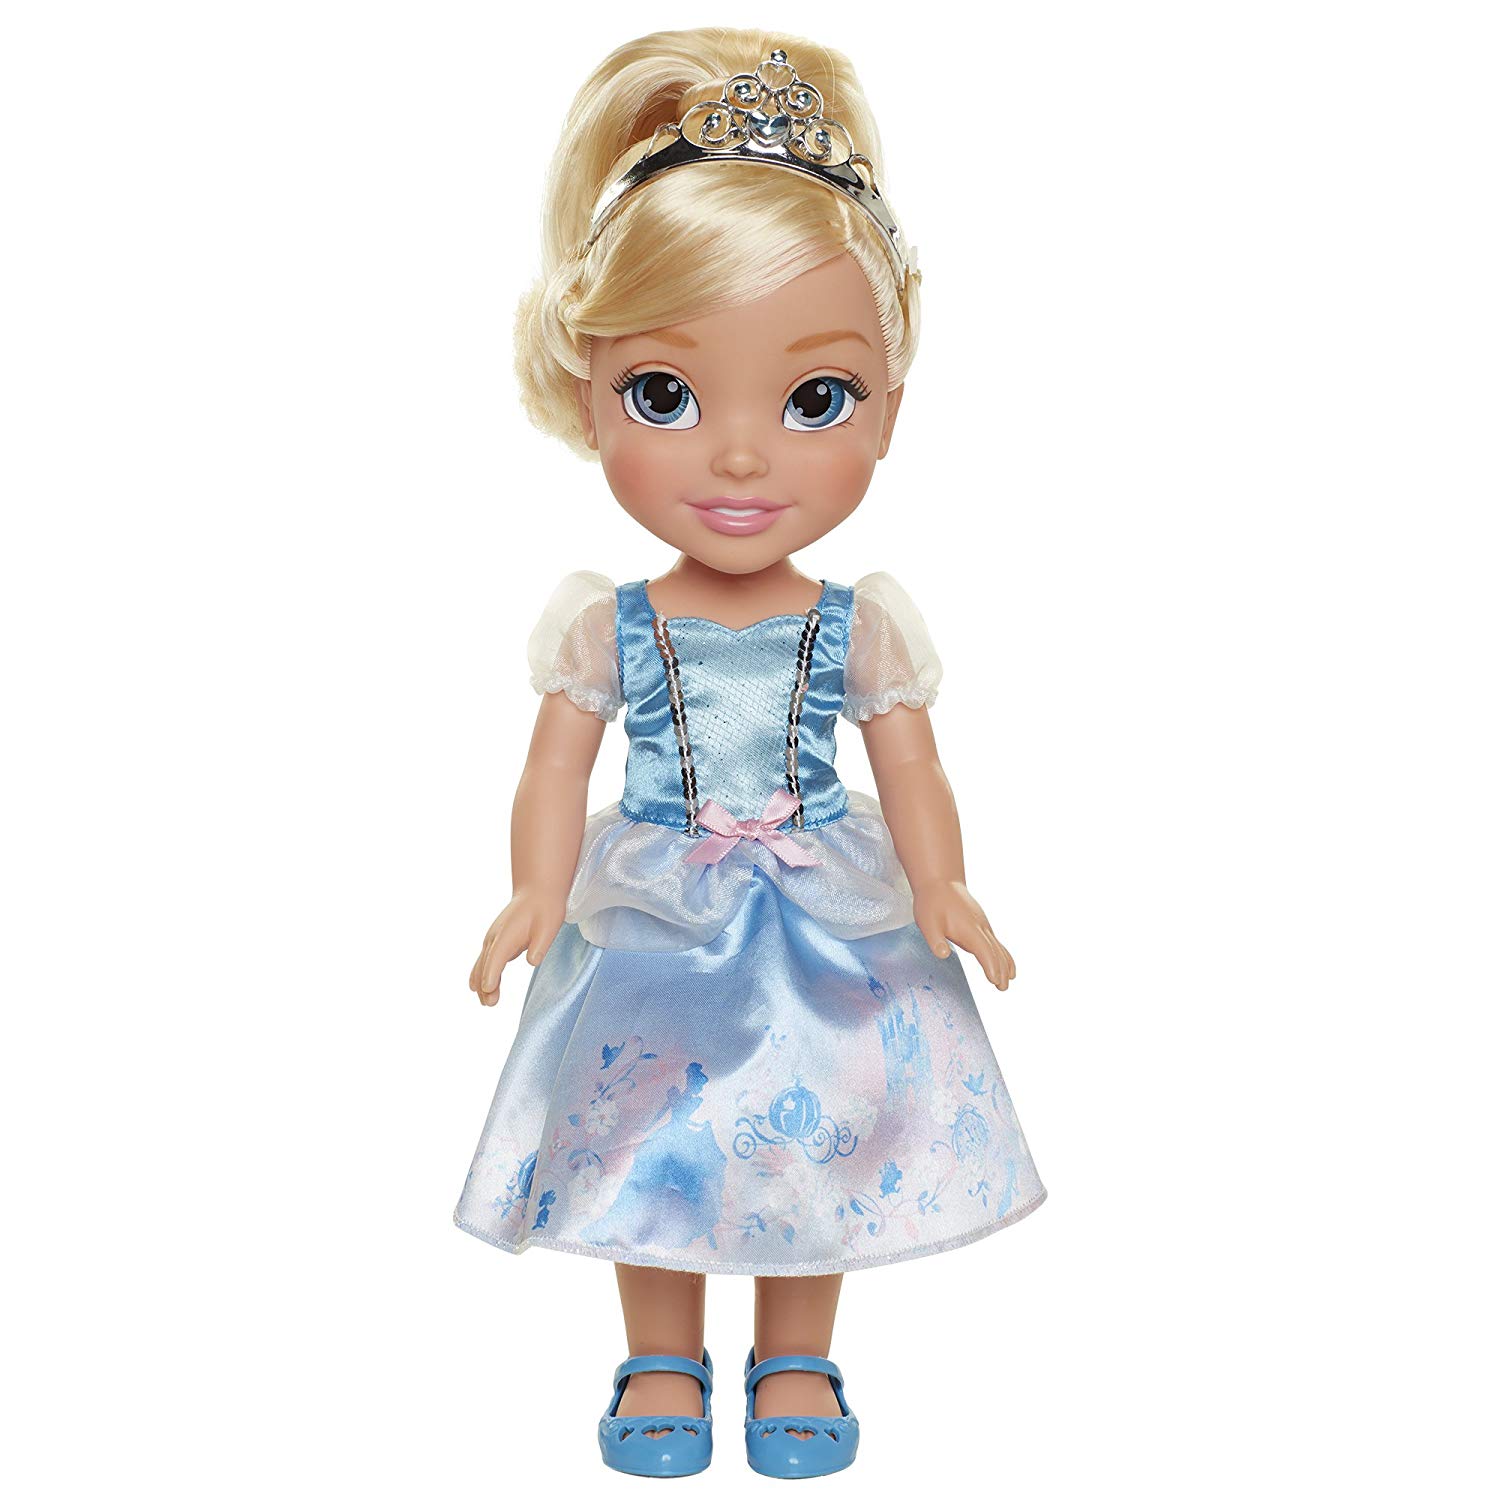 érection lavande askepot barbie med dreje kjole adolescent Paralyser